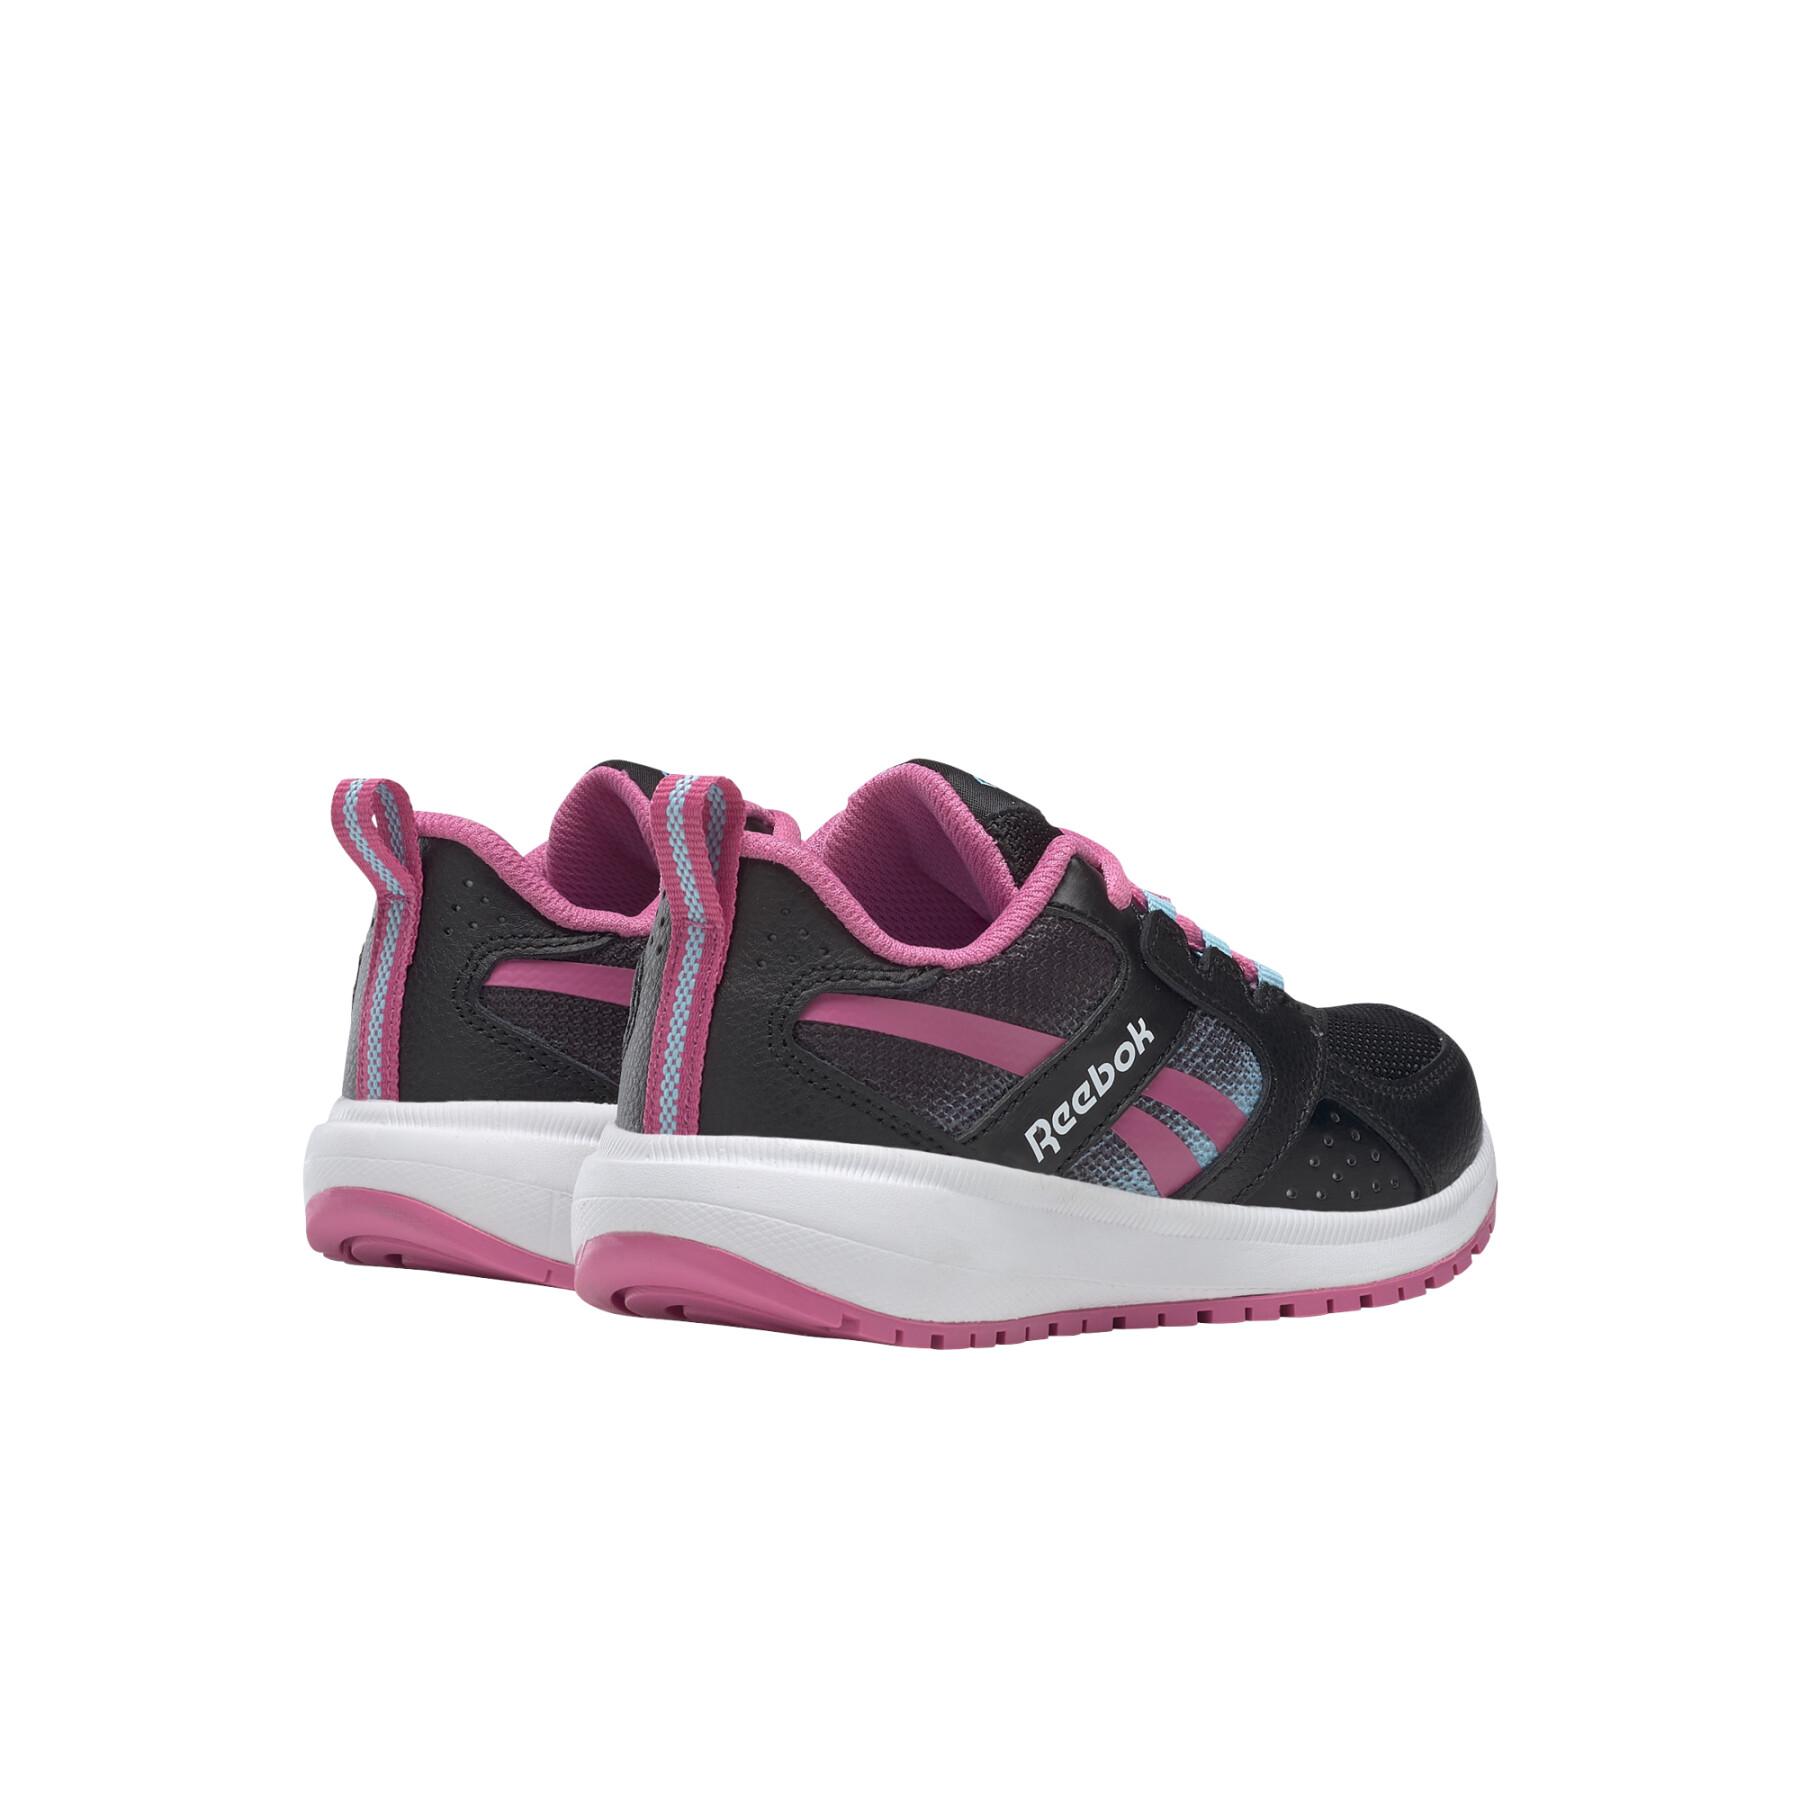 Schuhe für Mädchen Reebok Road Supreme 2